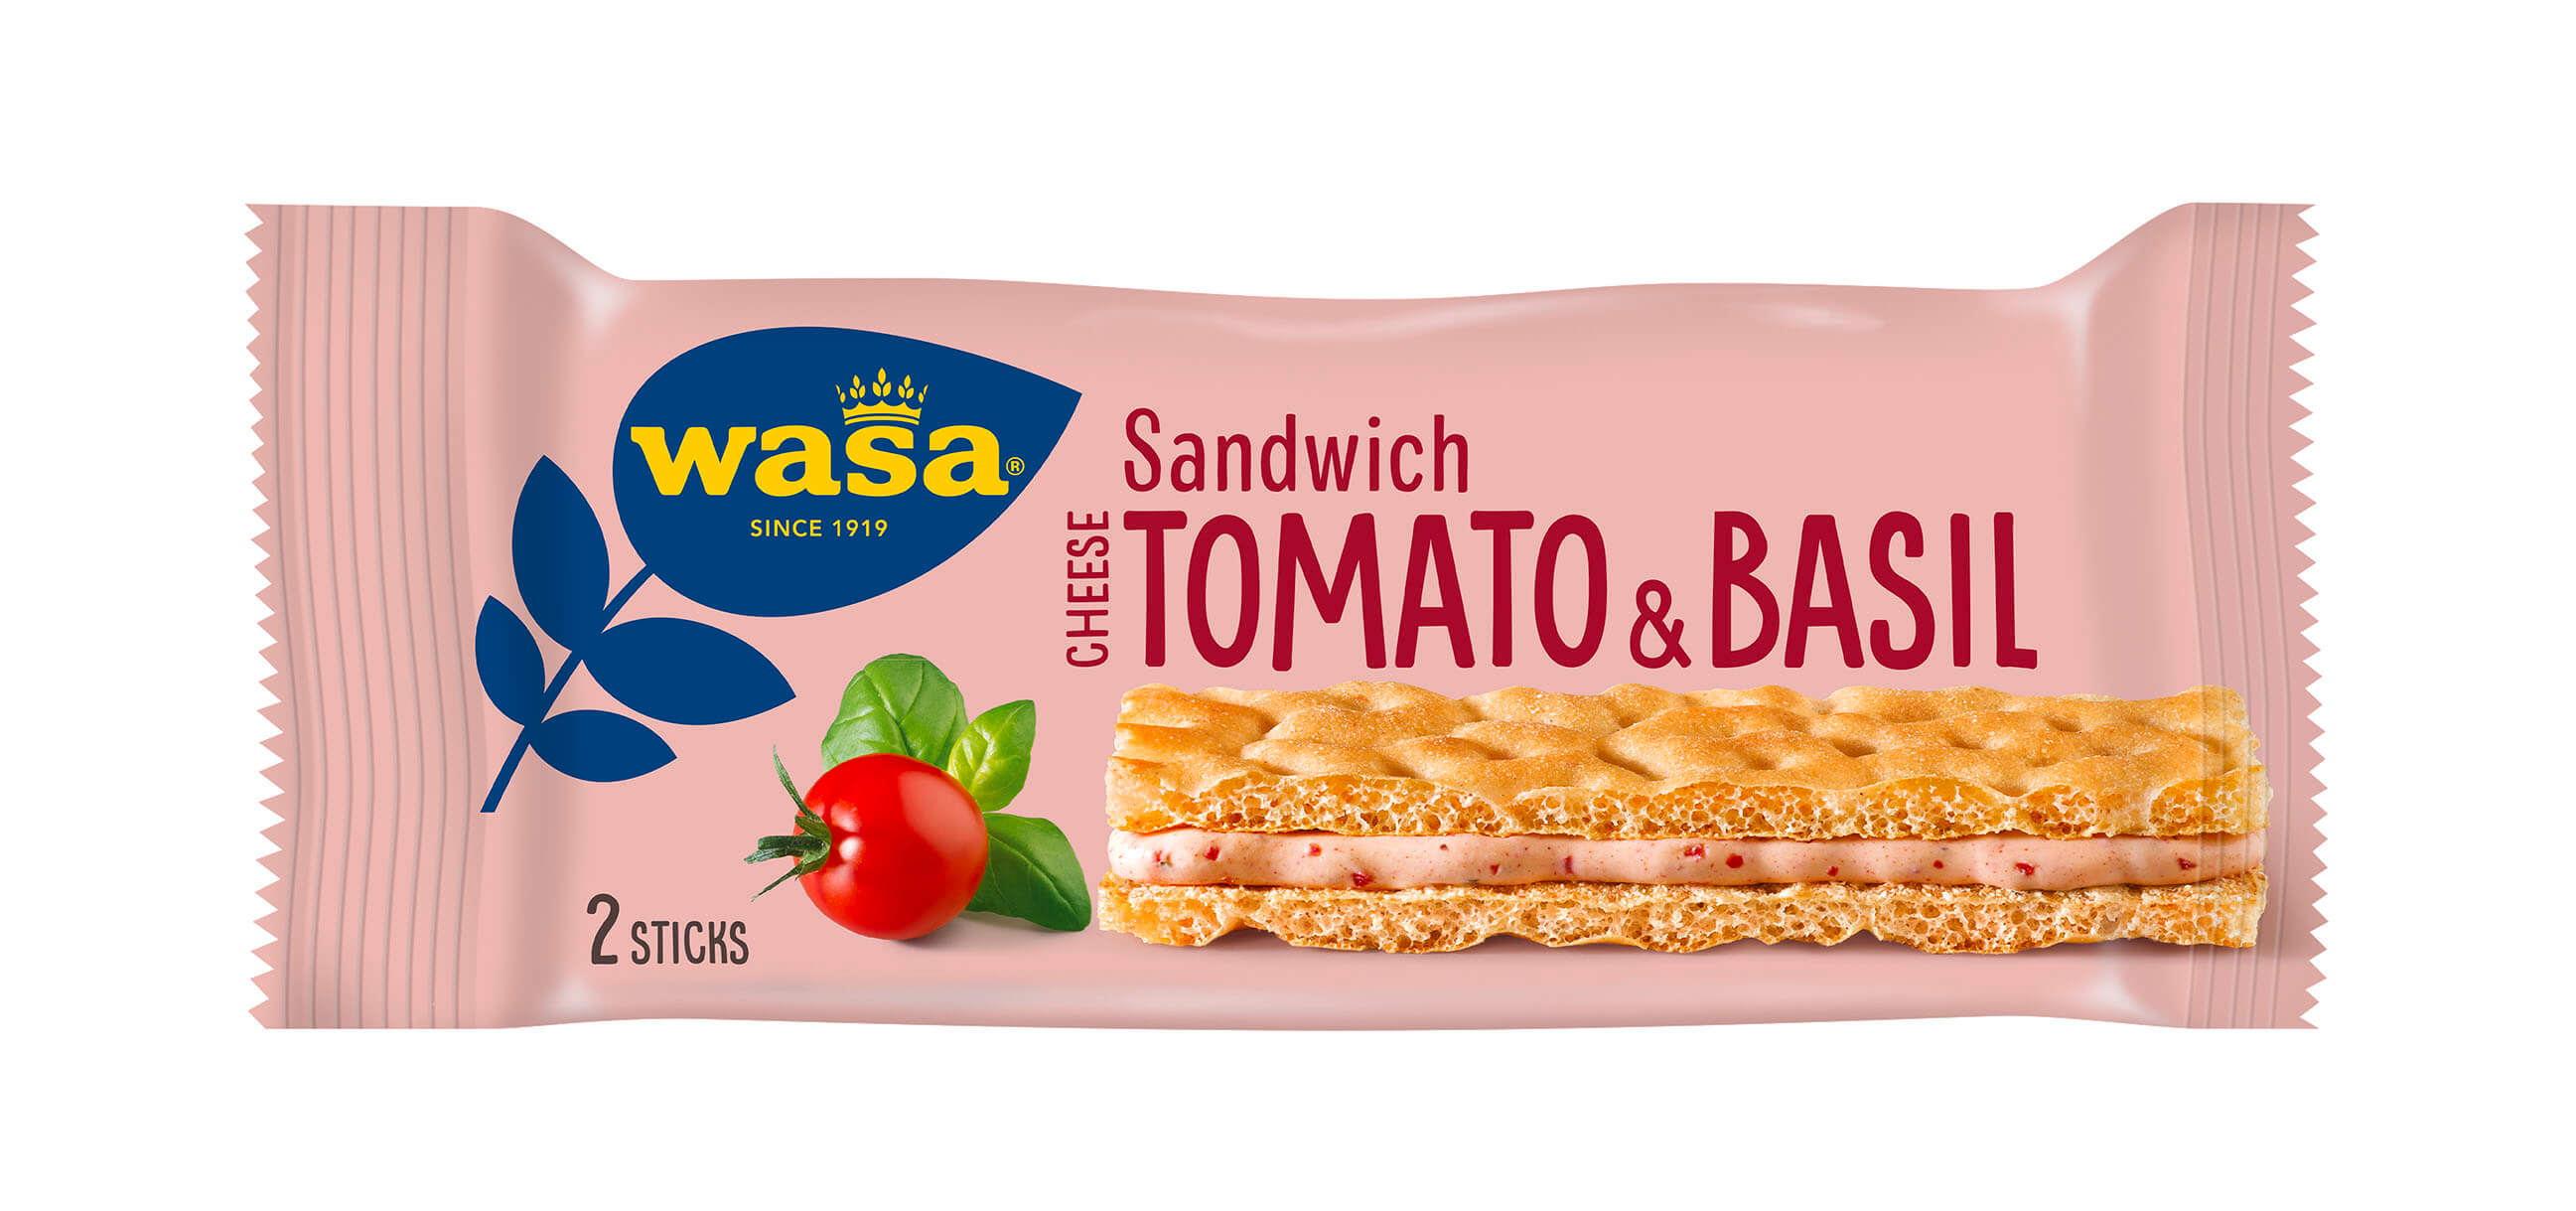 Wasa Sandwich Tomato & Basil - Upptäck ett veganskt mellanmål, gott knäckebröd med krämig fyllning. Utmärkt som mellanmål på språng och som goda mellanmål efter skolan eller innan träning.